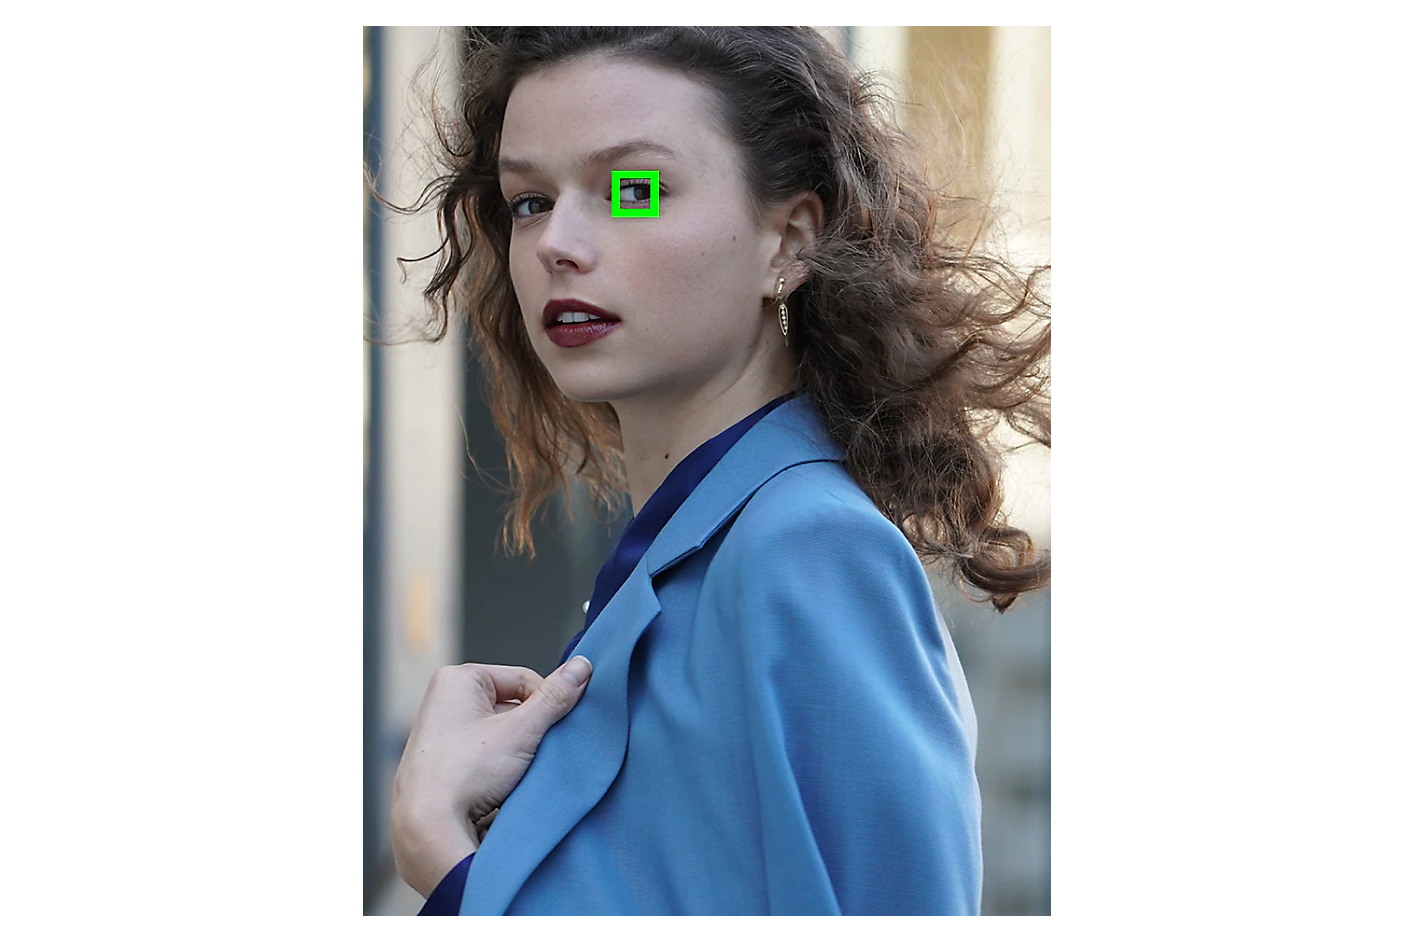 אישה לבושה בז'קט כחול מסתכלת הצידה וריבוע ירוק ממסגר עין אחת.